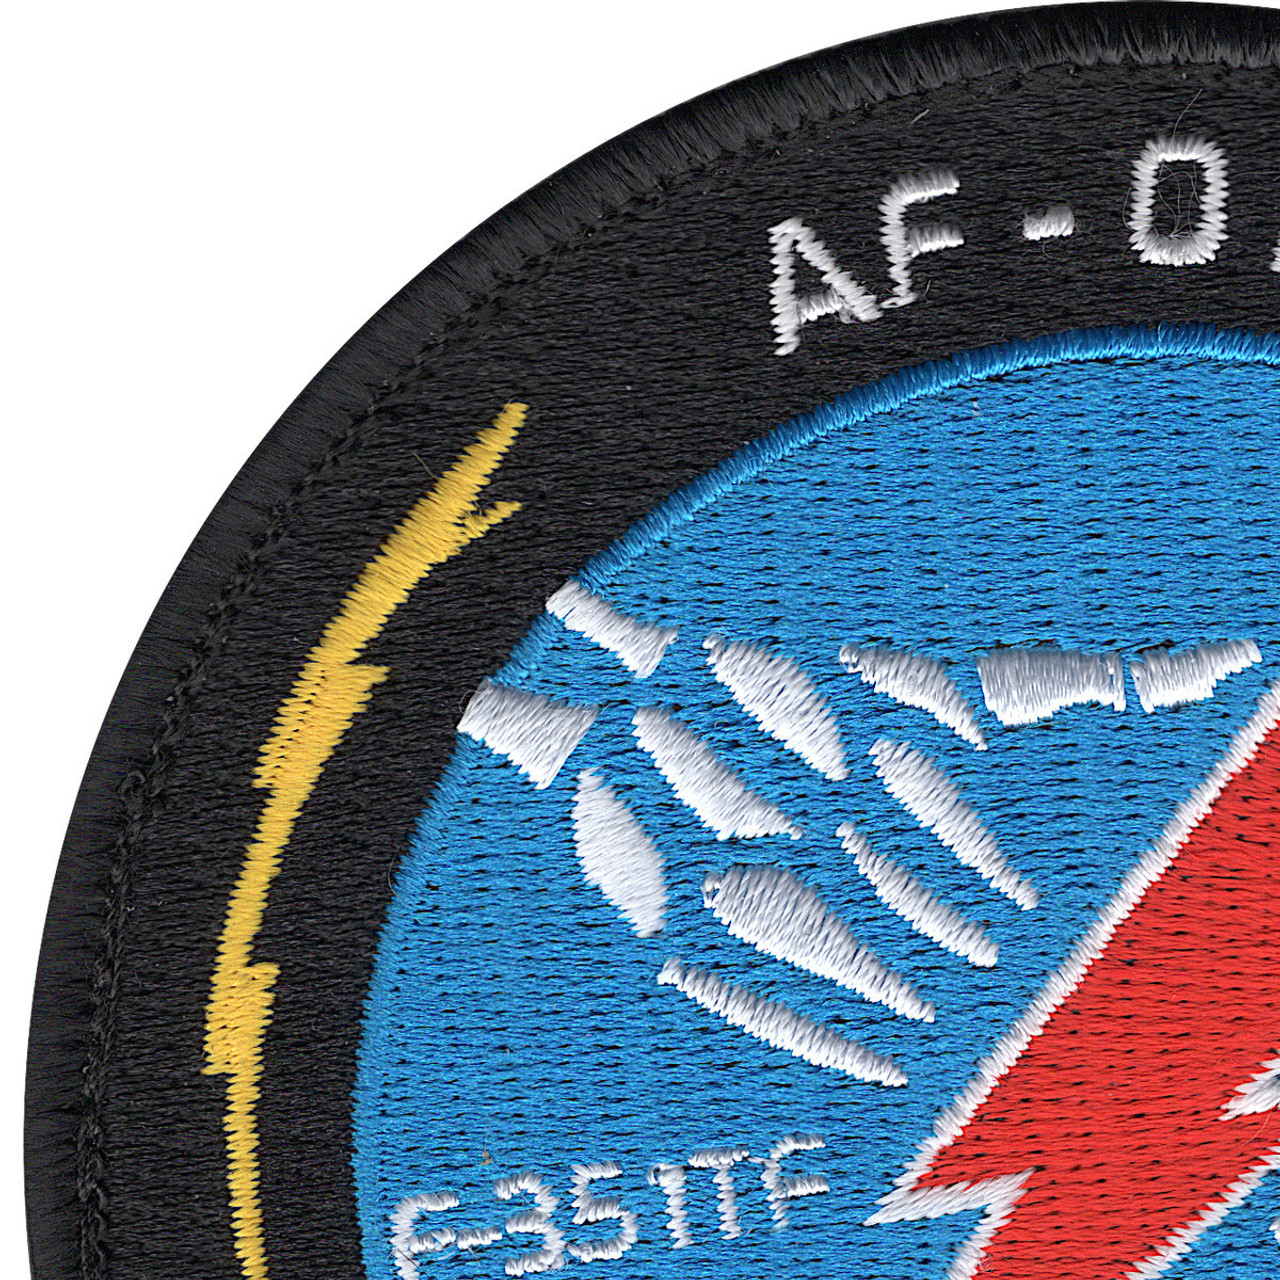 USAF AF-01 F-35 Integrated Test Force HOOK& LOOP EDWARDS AFB MILITARY PATCH 